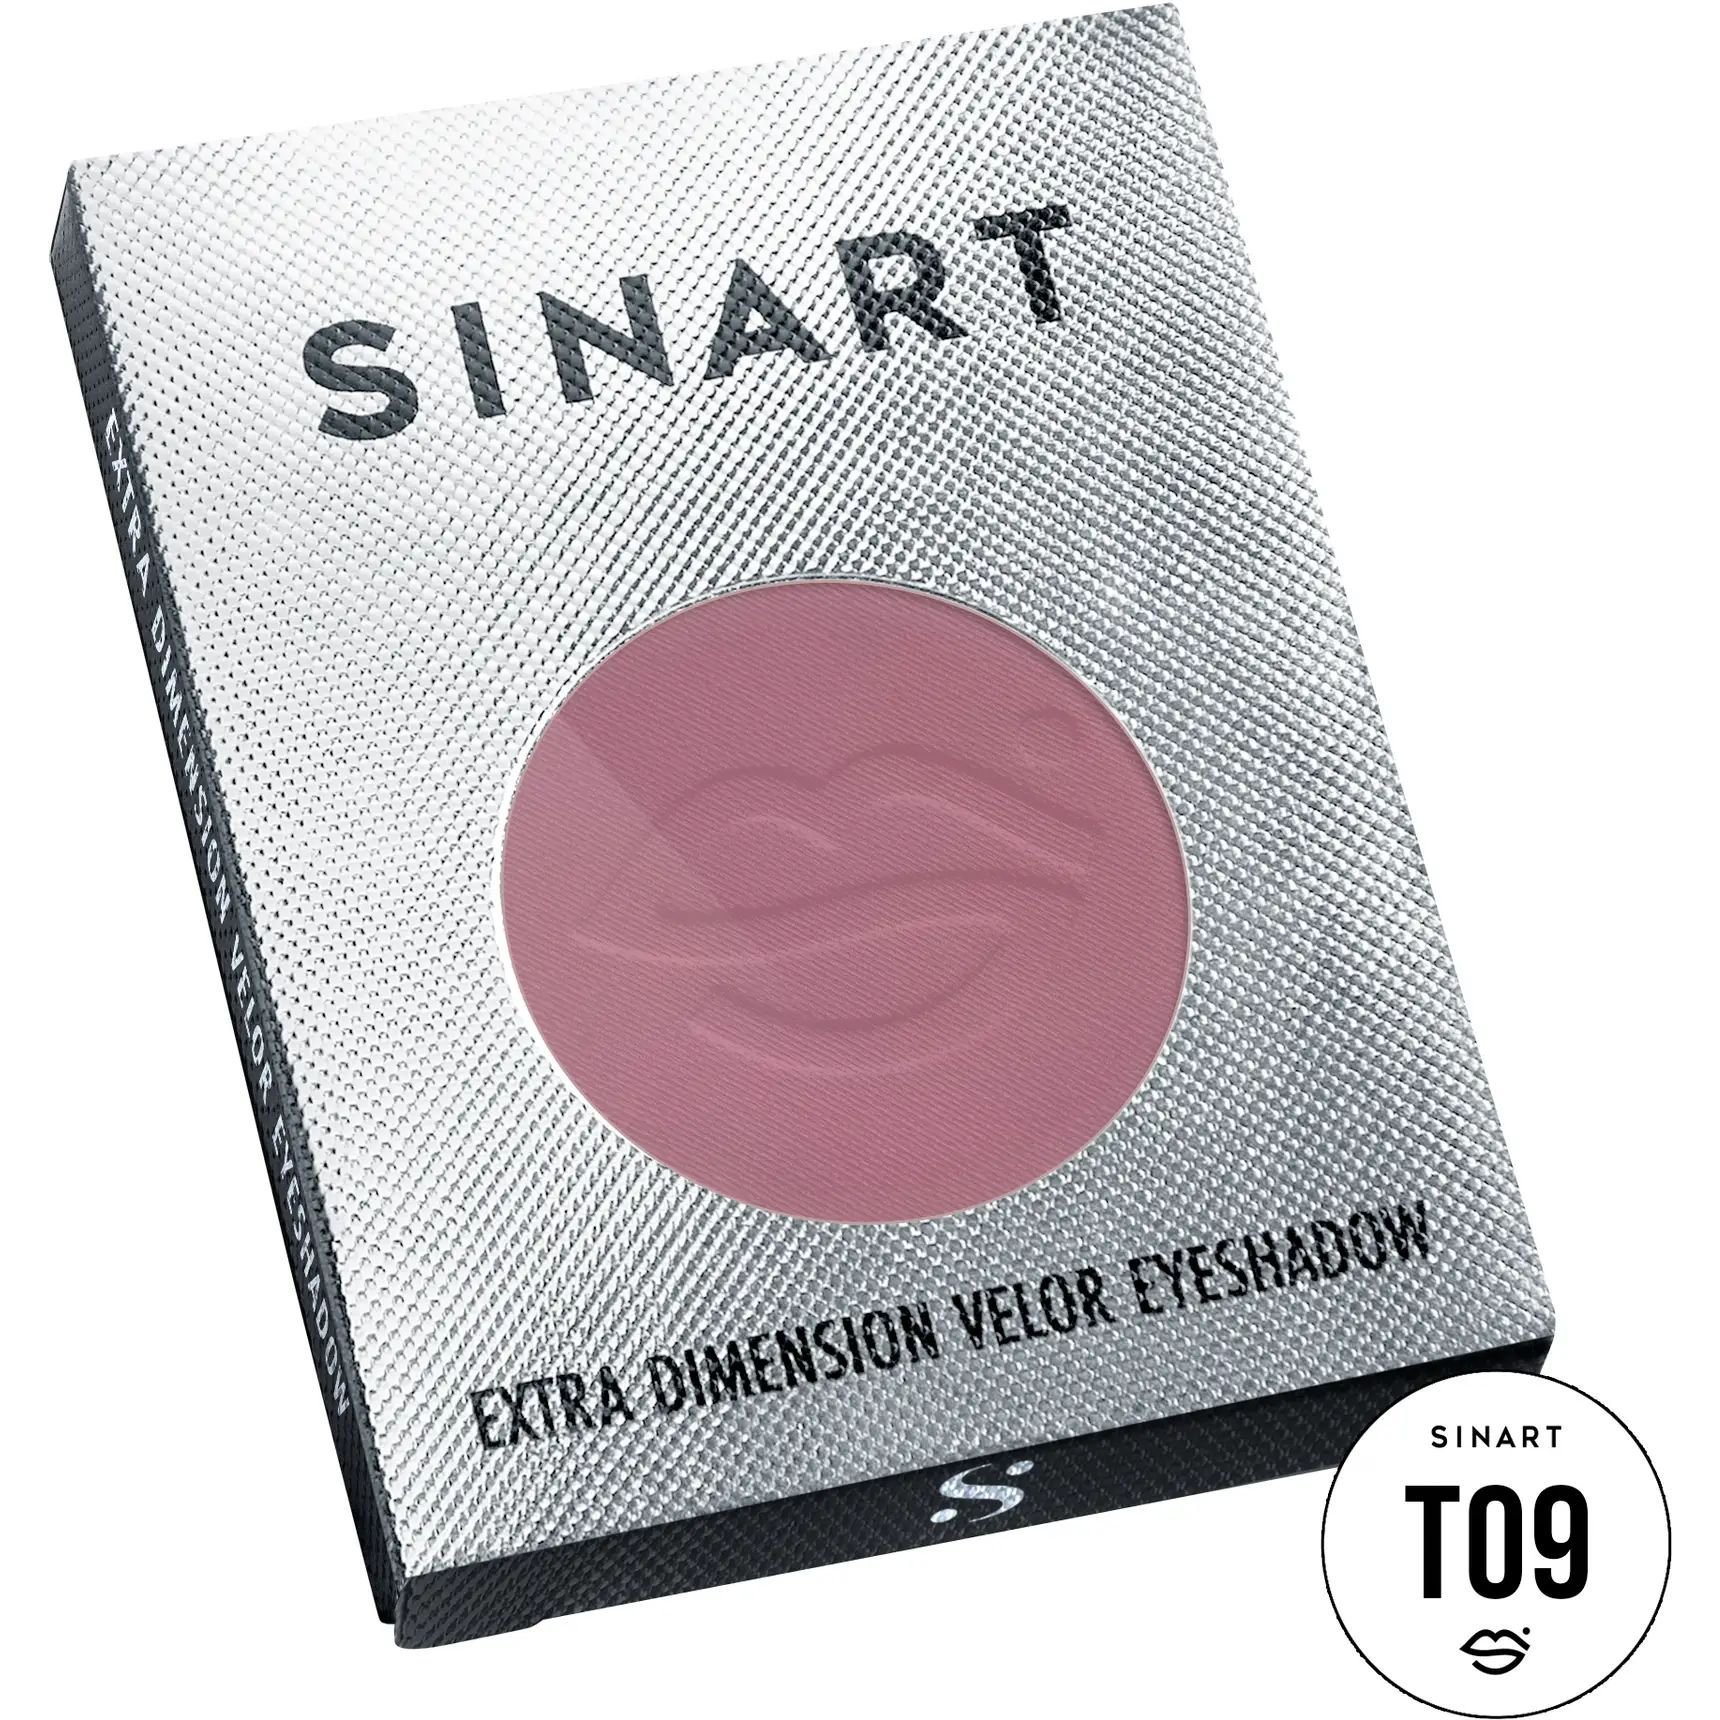 Прессованные тени для век Sinart T09 Extra Dimension Velor Eyeshadow - фото 3